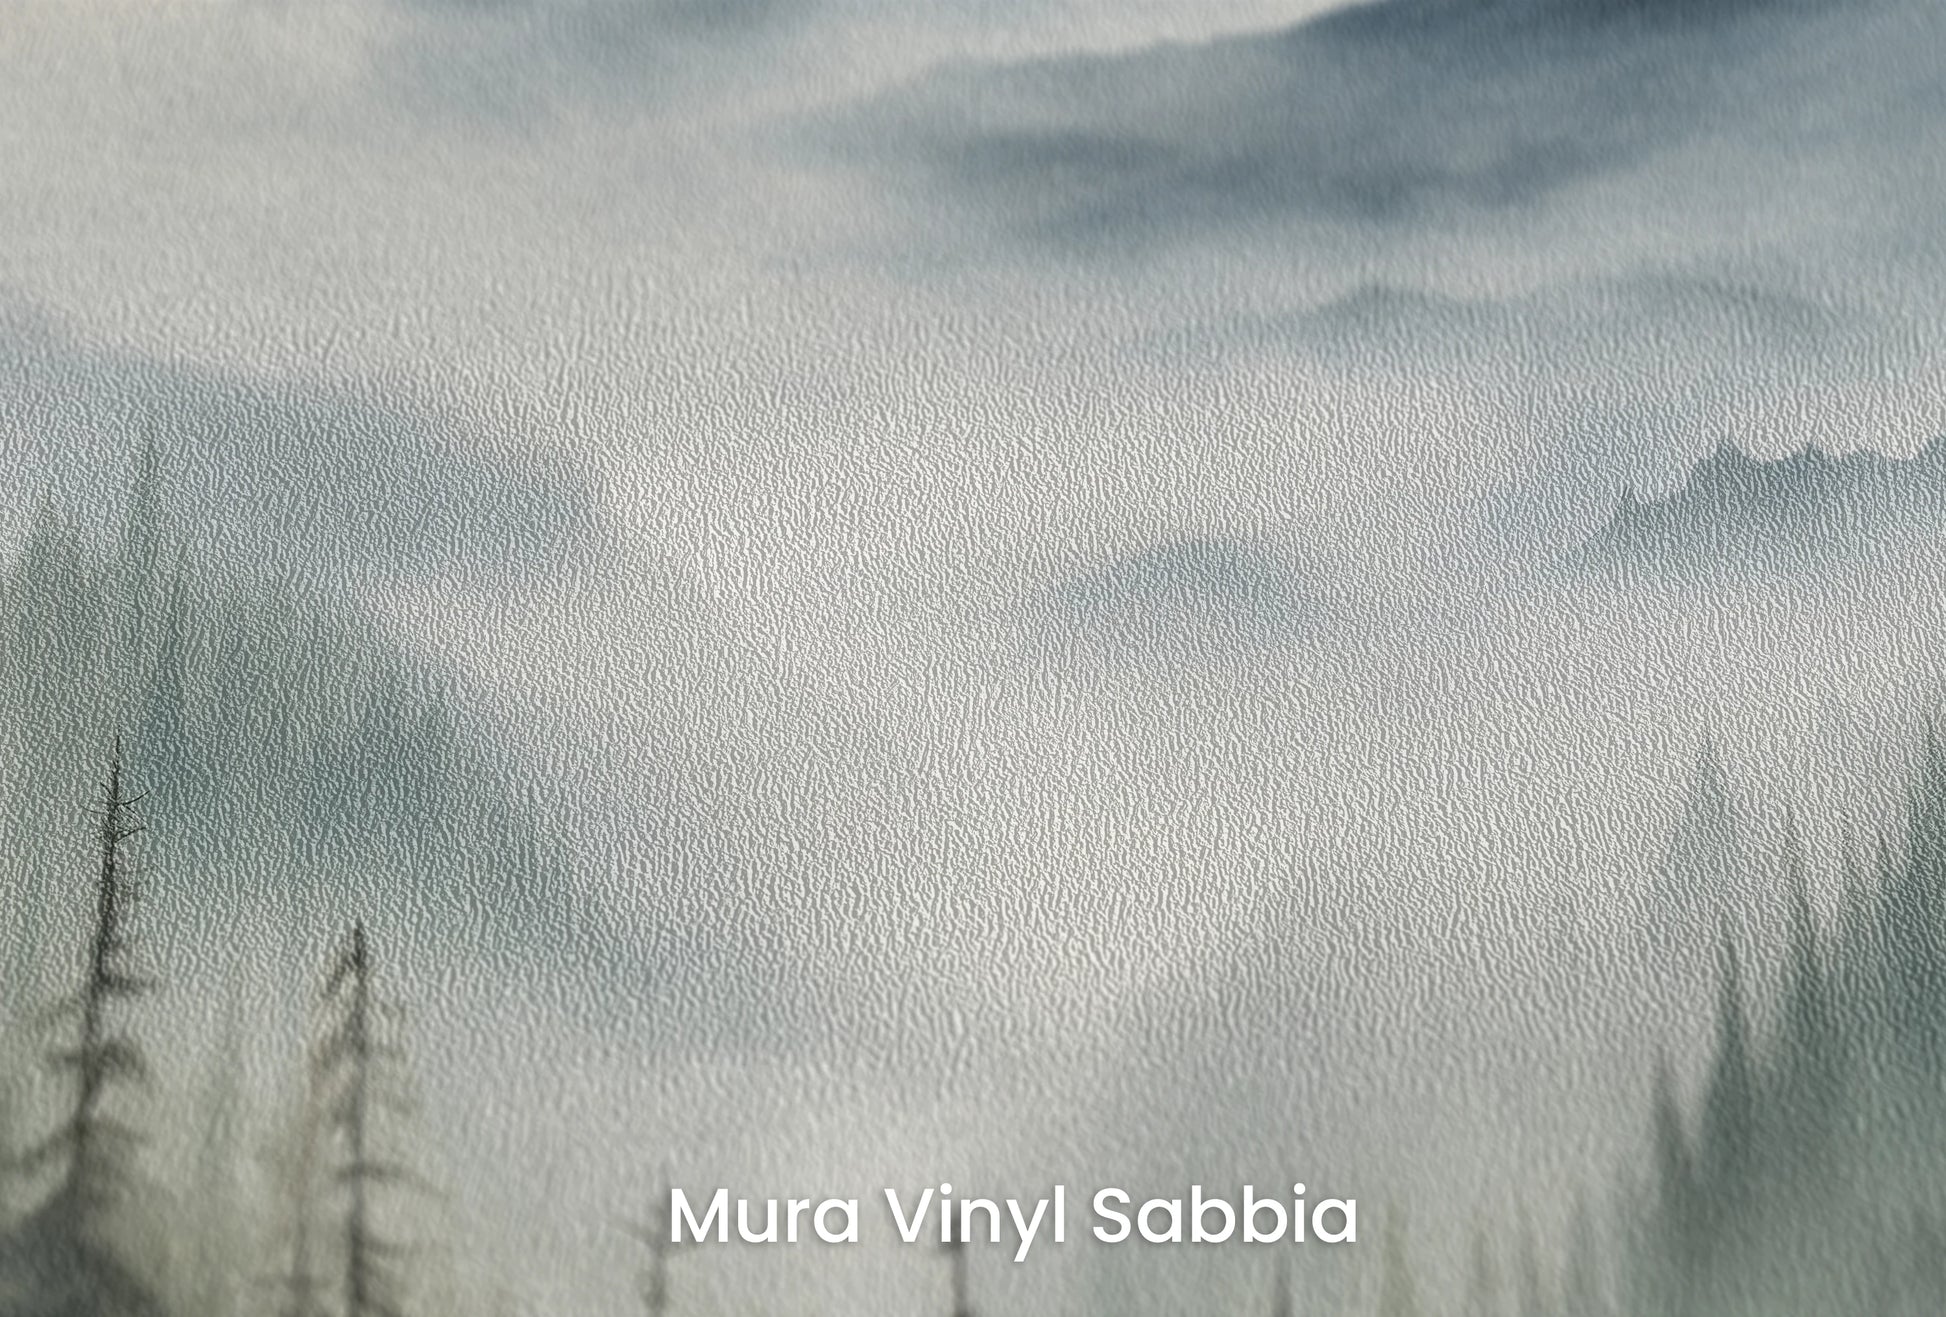 Zbliżenie na artystyczną fototapetę o nazwie Serene Pines na podłożu Mura Vinyl Sabbia struktura grubego ziarna piasku.